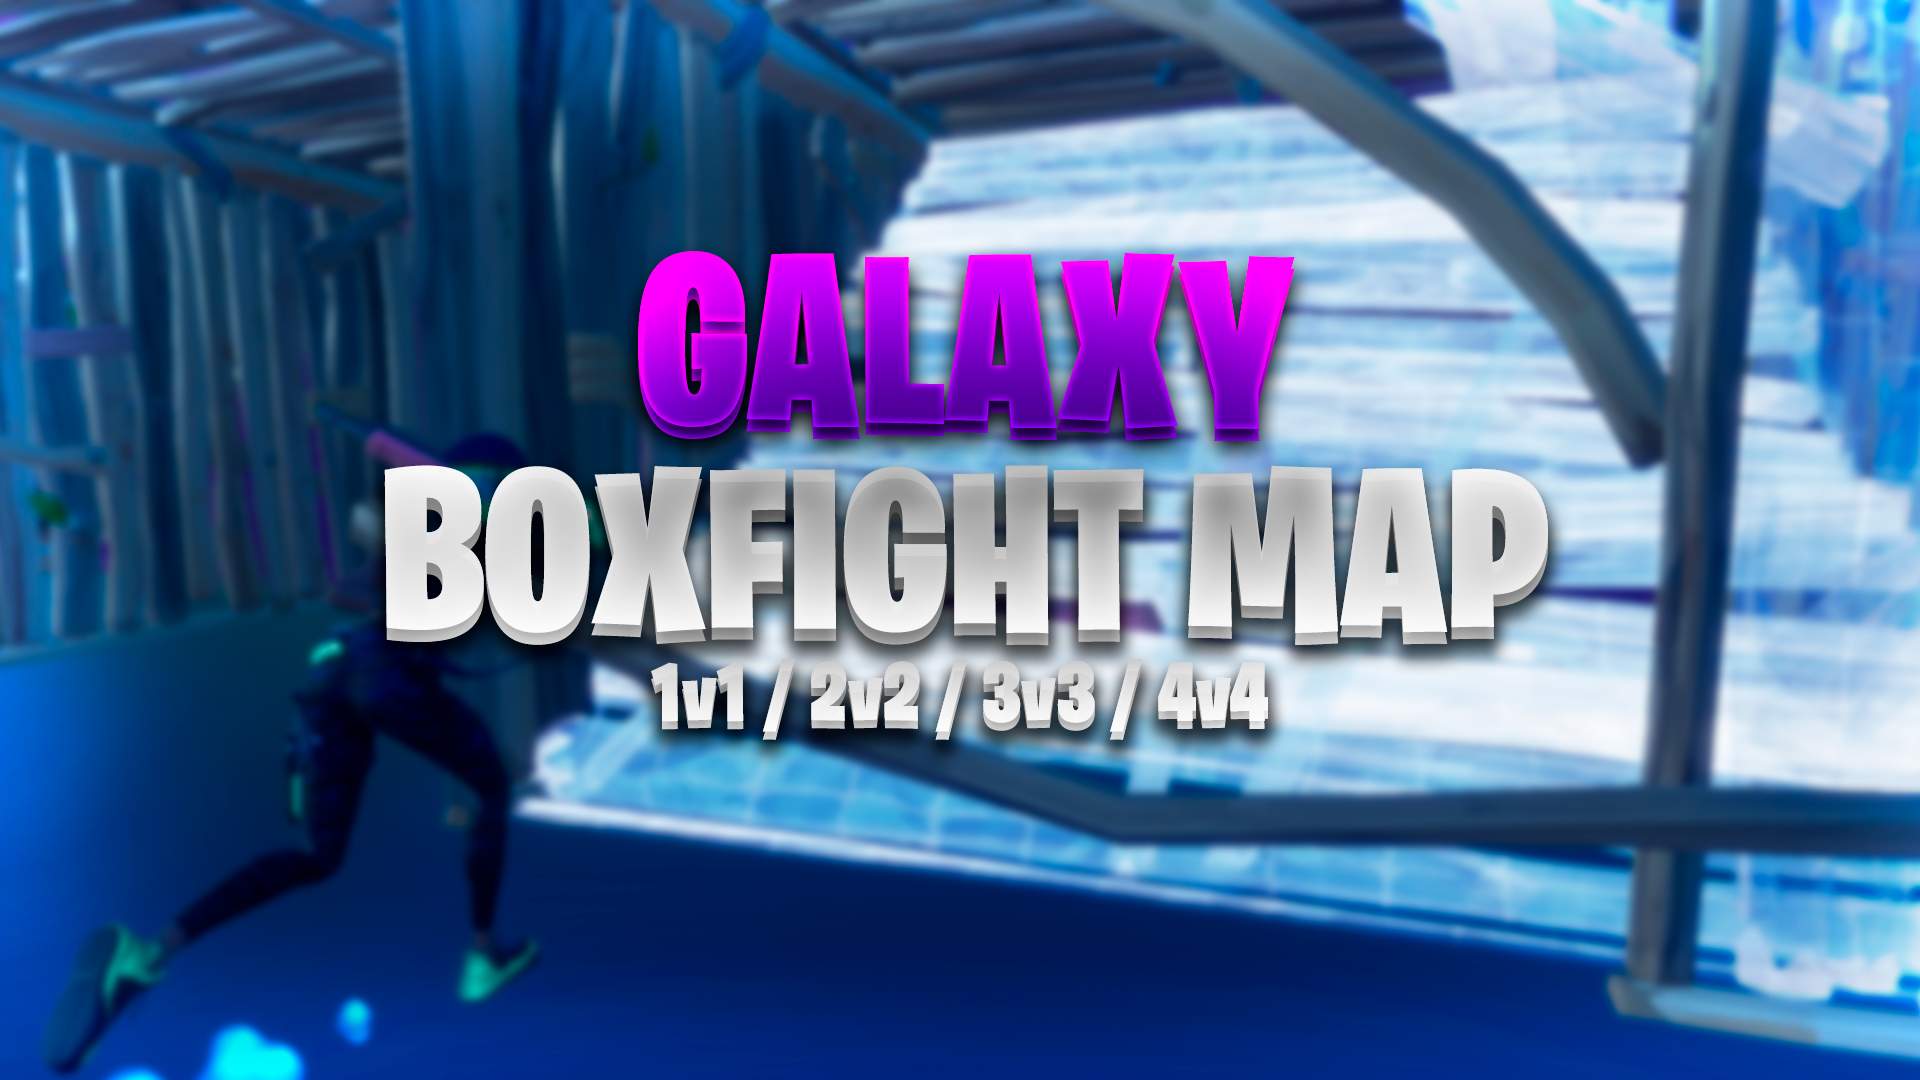 GALAXY BOX FIGHTS